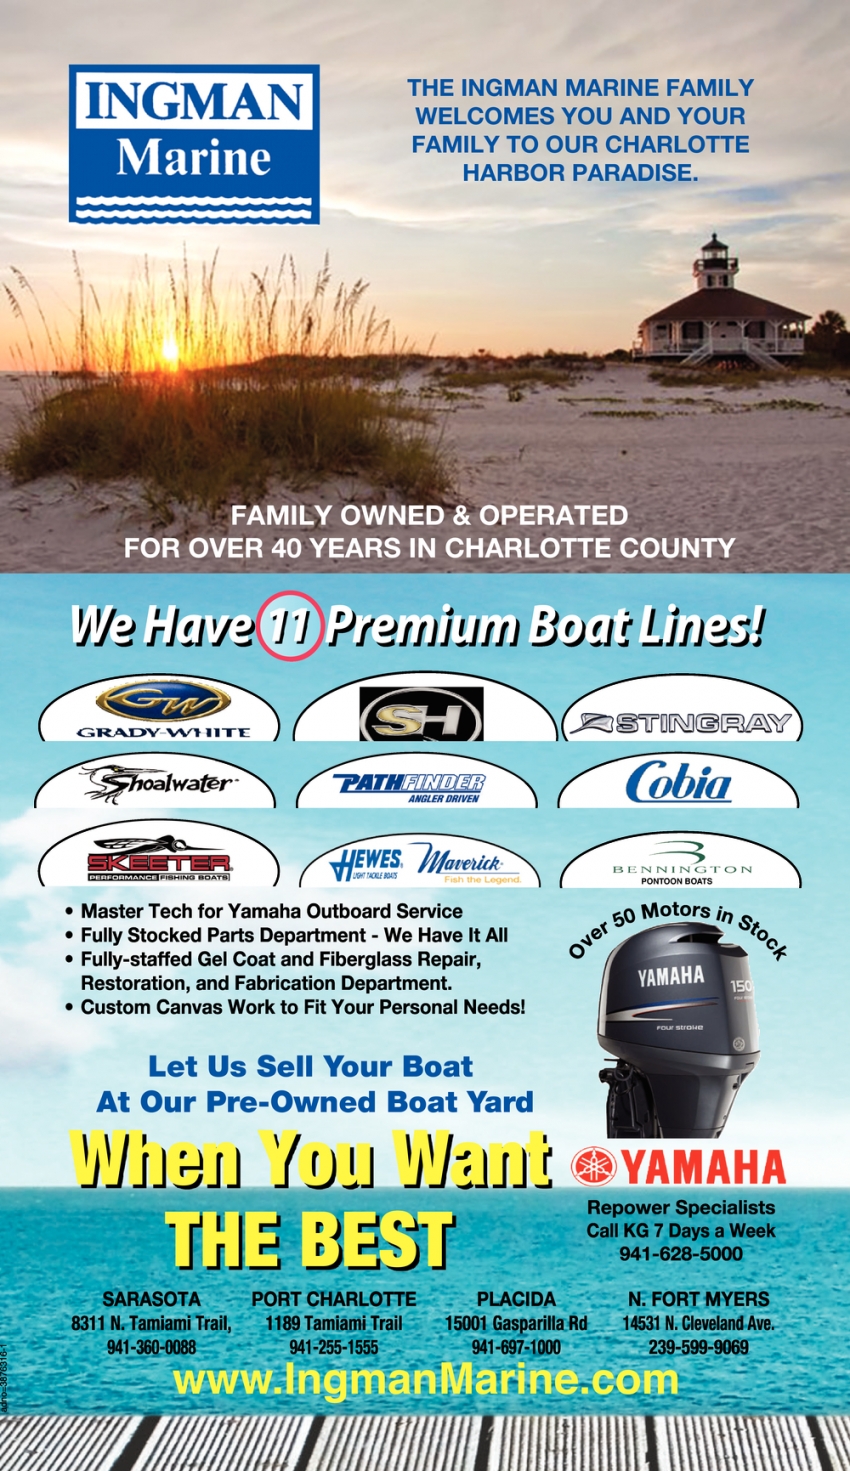 We Have 11 Premium Boat Lines!